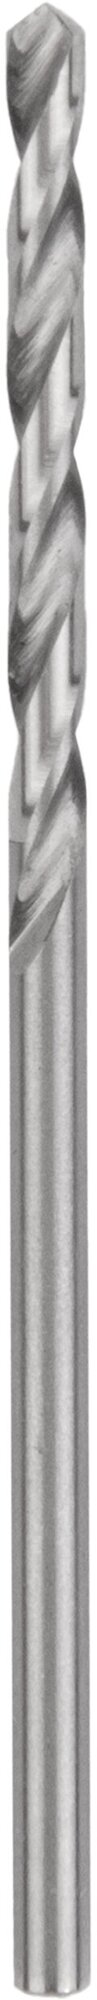 Сверло по металлу и чугуну 0,95 мм NORGAU Industrial из быстрорежущей HSS стали, DIN 338